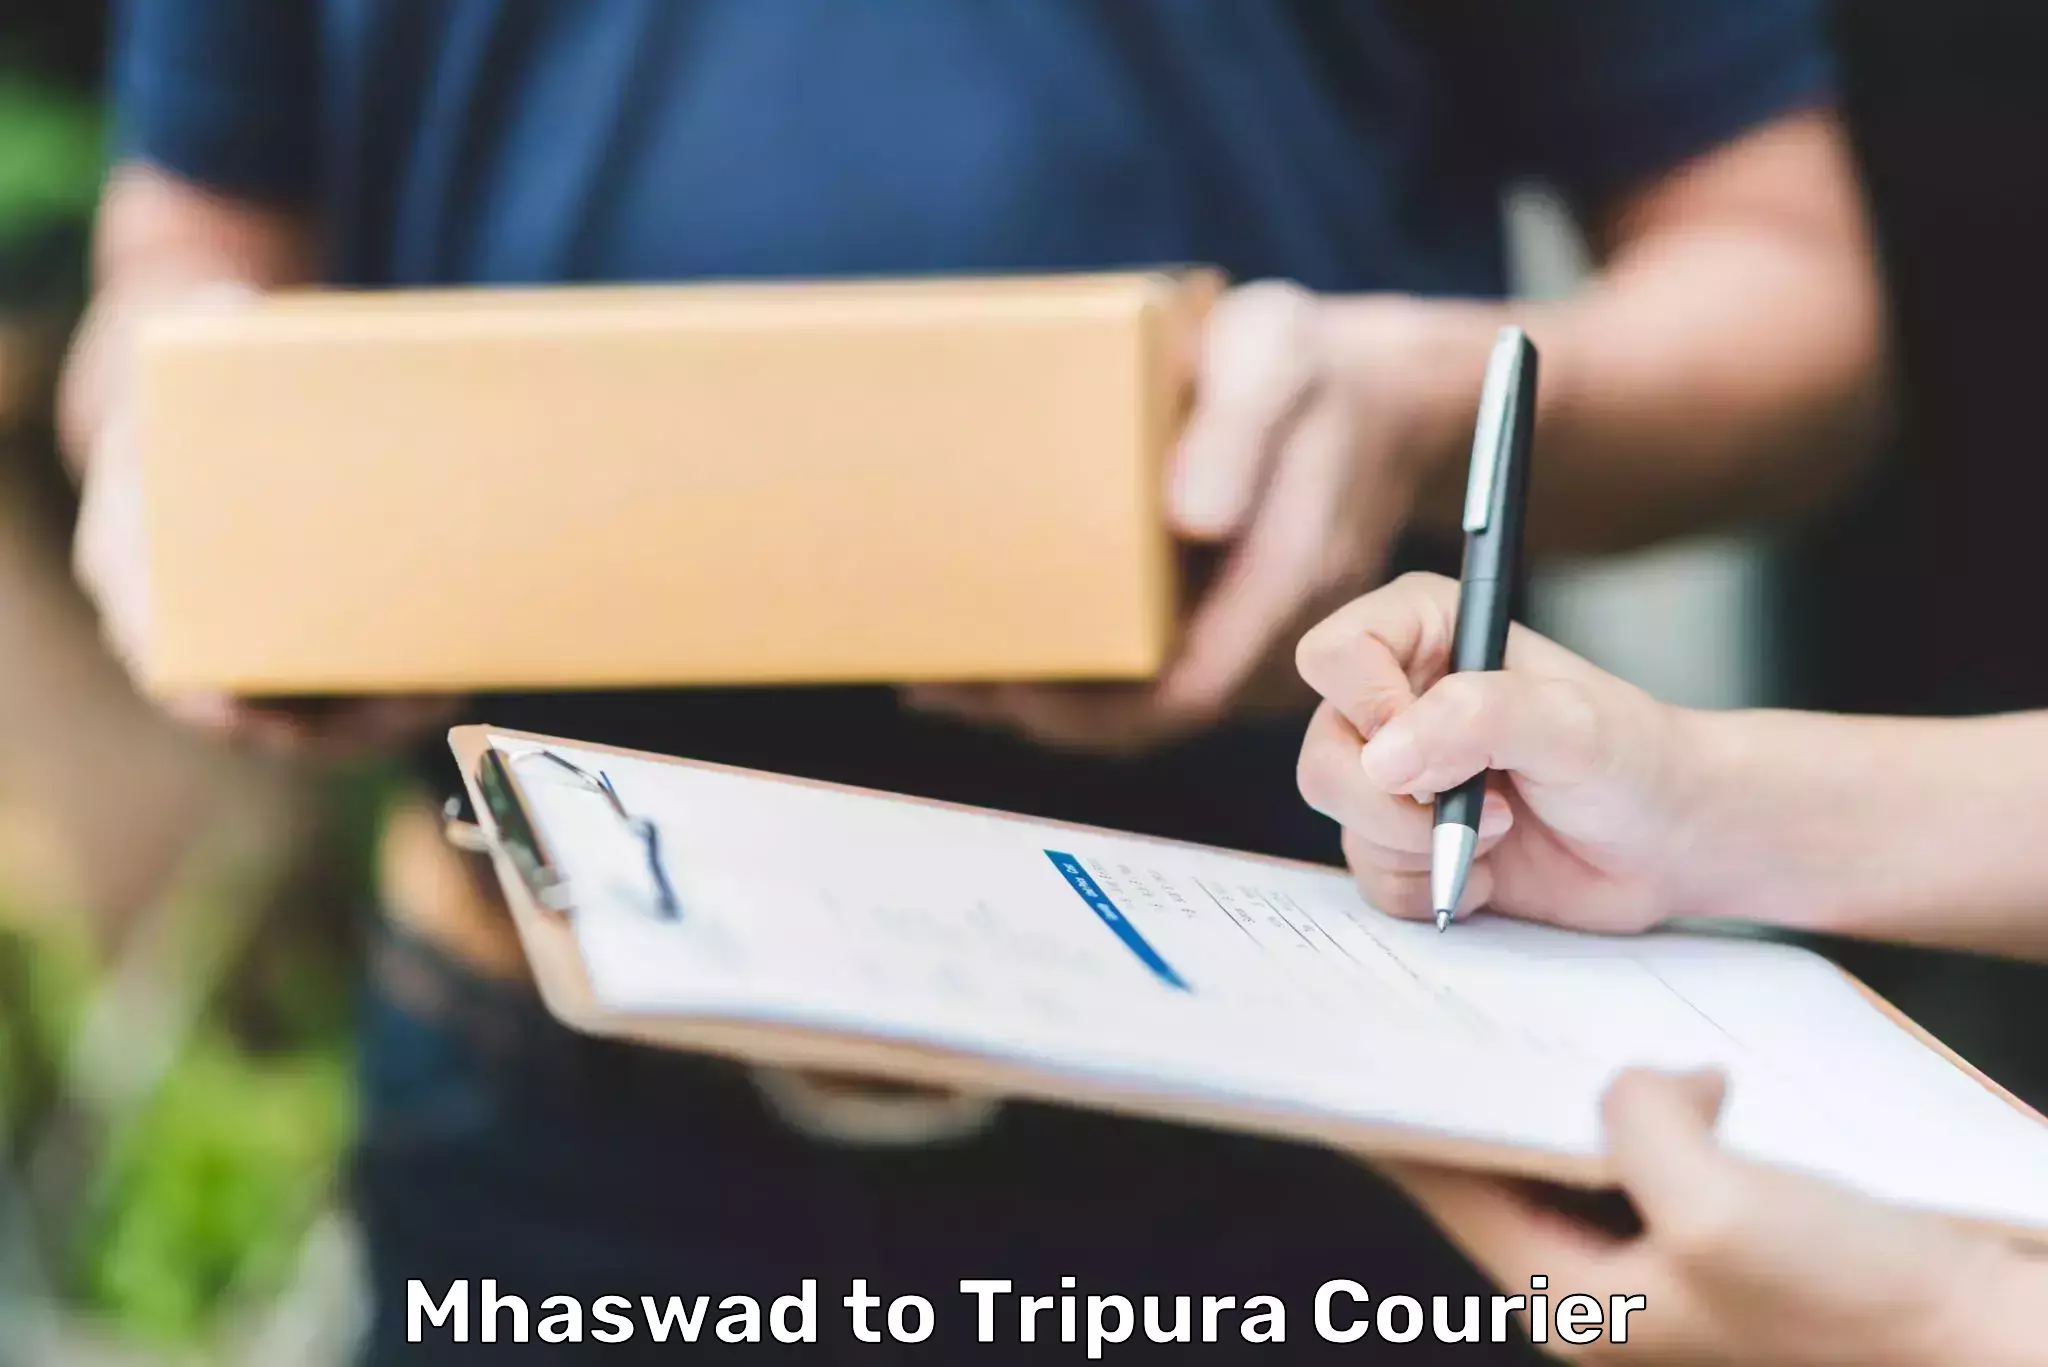 Express postal services Mhaswad to Tripura